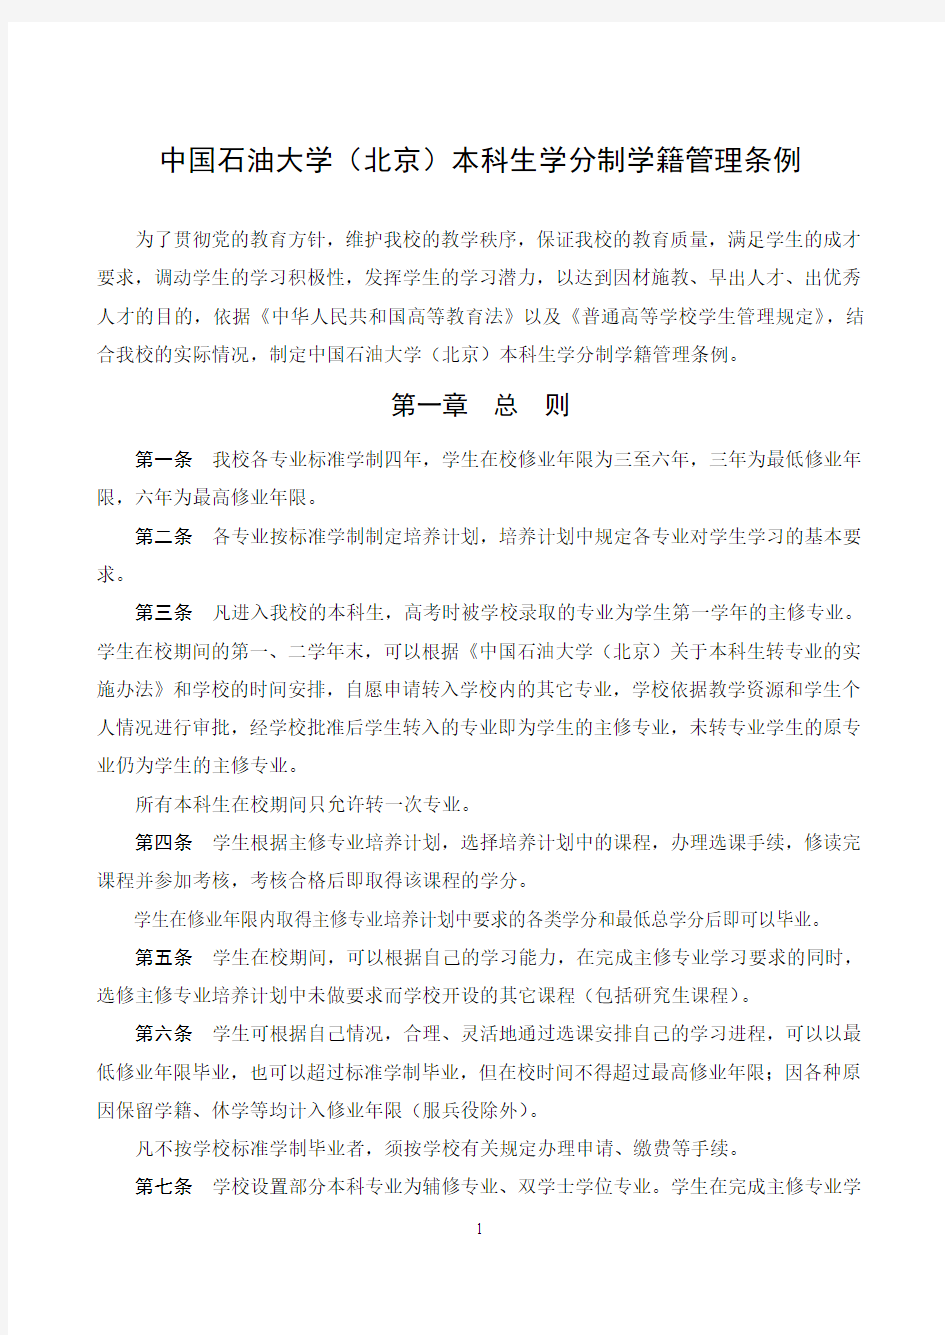 中国石油大学北京本科生学分制学籍管理条例